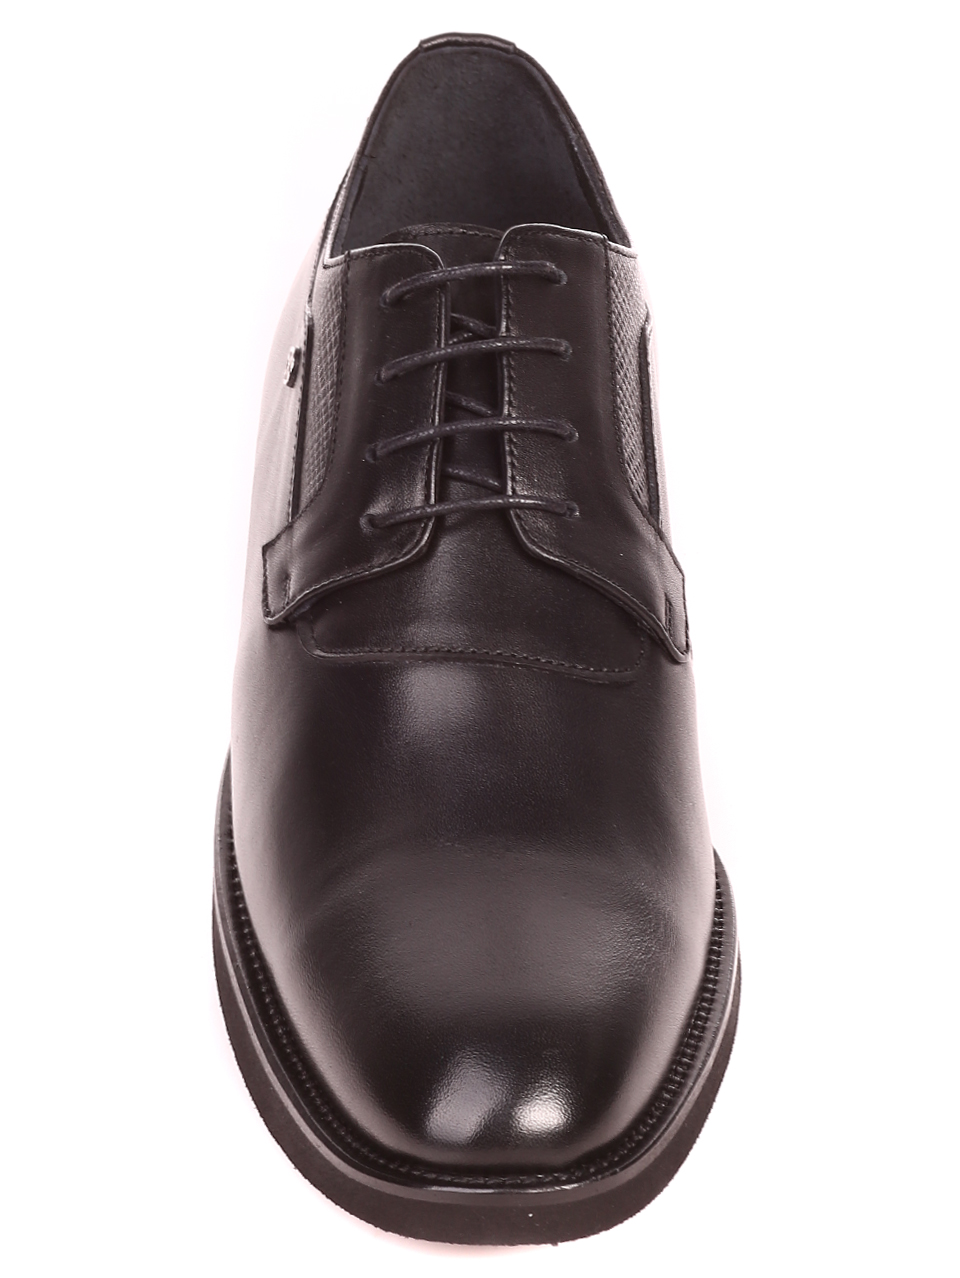 Елегантни мъжки обувки от естествена кожа 7AT-21855 black